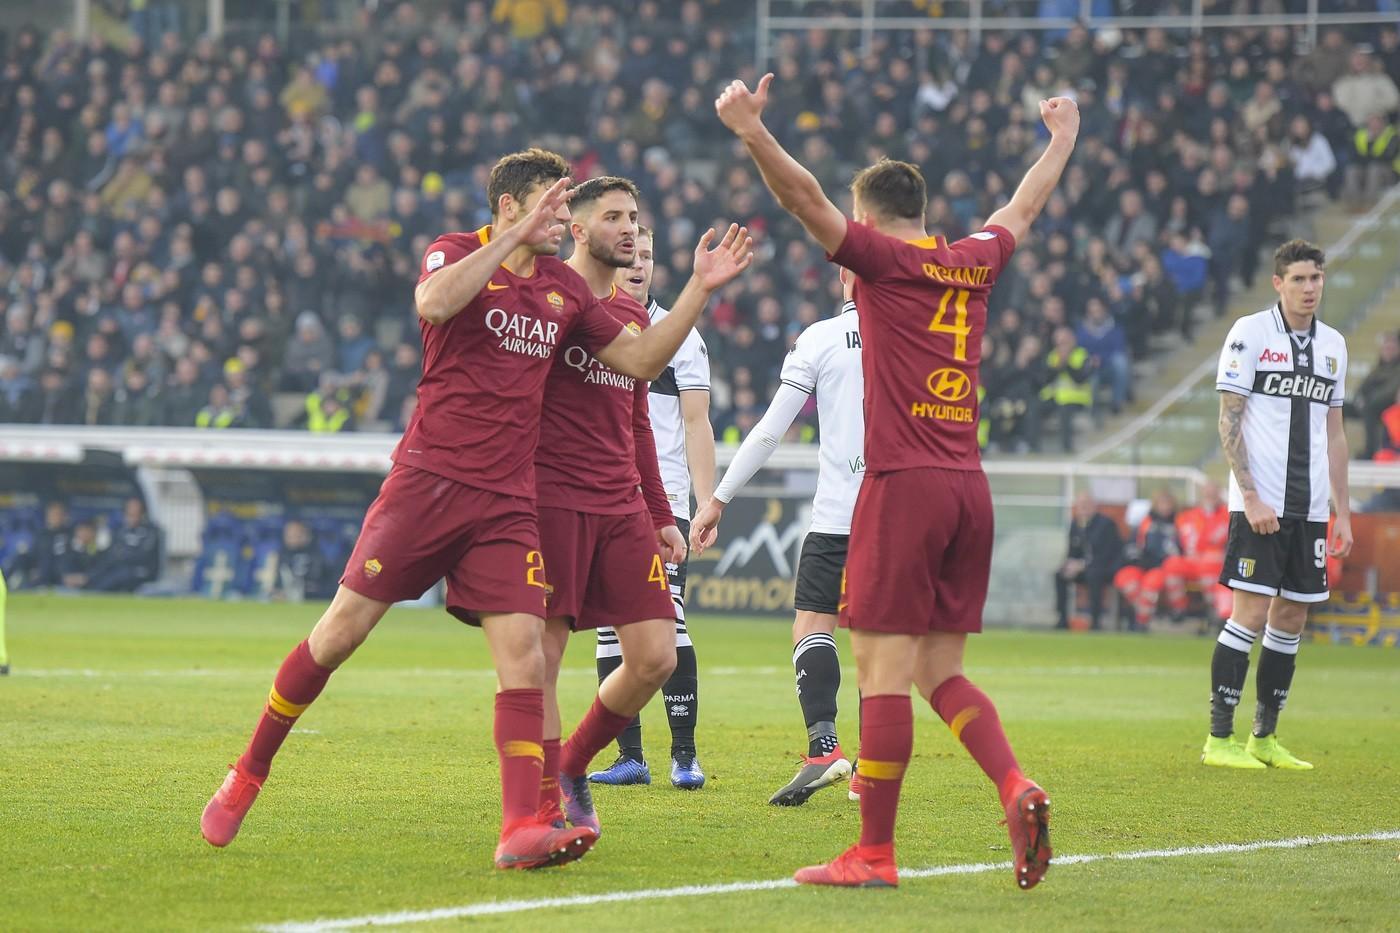 L'analisi tattica di Parma-Roma: bel gioco e punti, ora si può©LaPresse